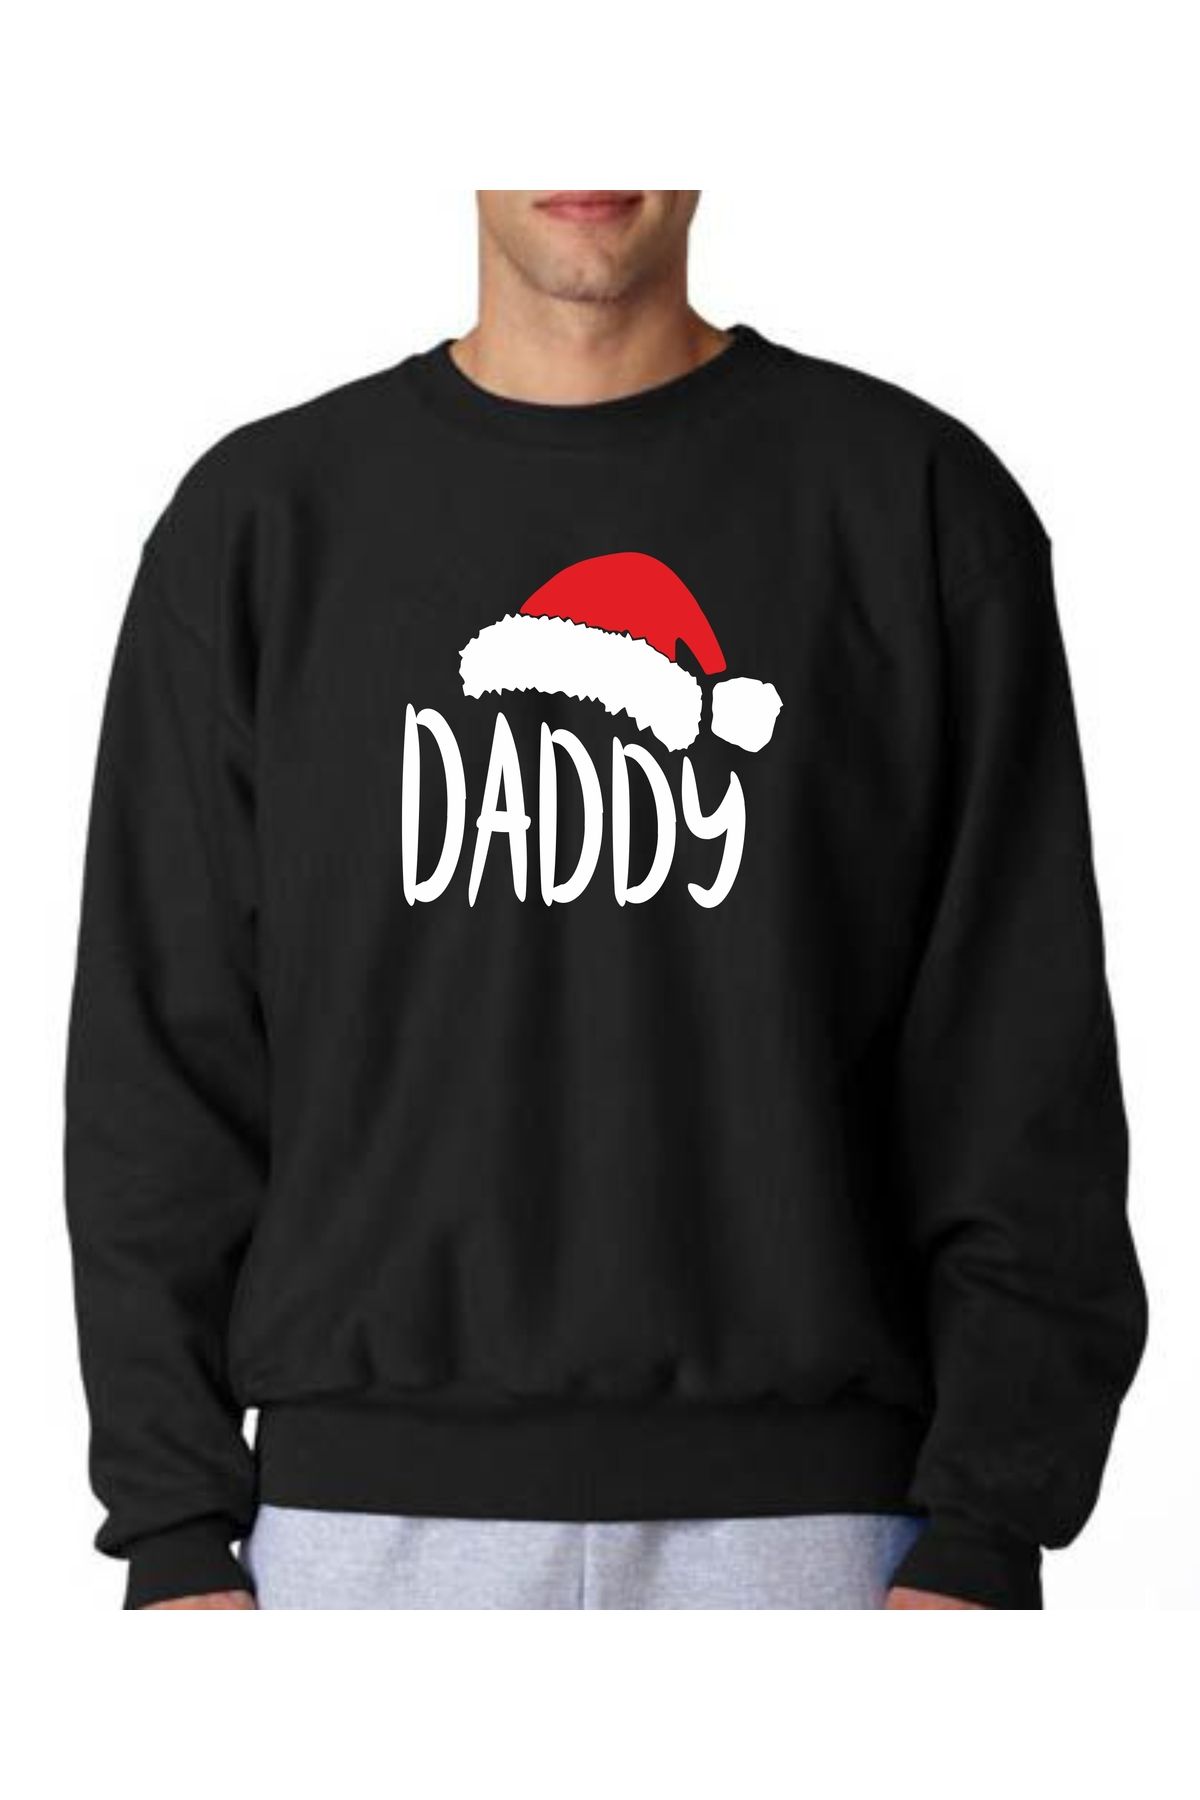 venüsdijital Yılbaşı Özel Baskılı Daddy Sweatshirt